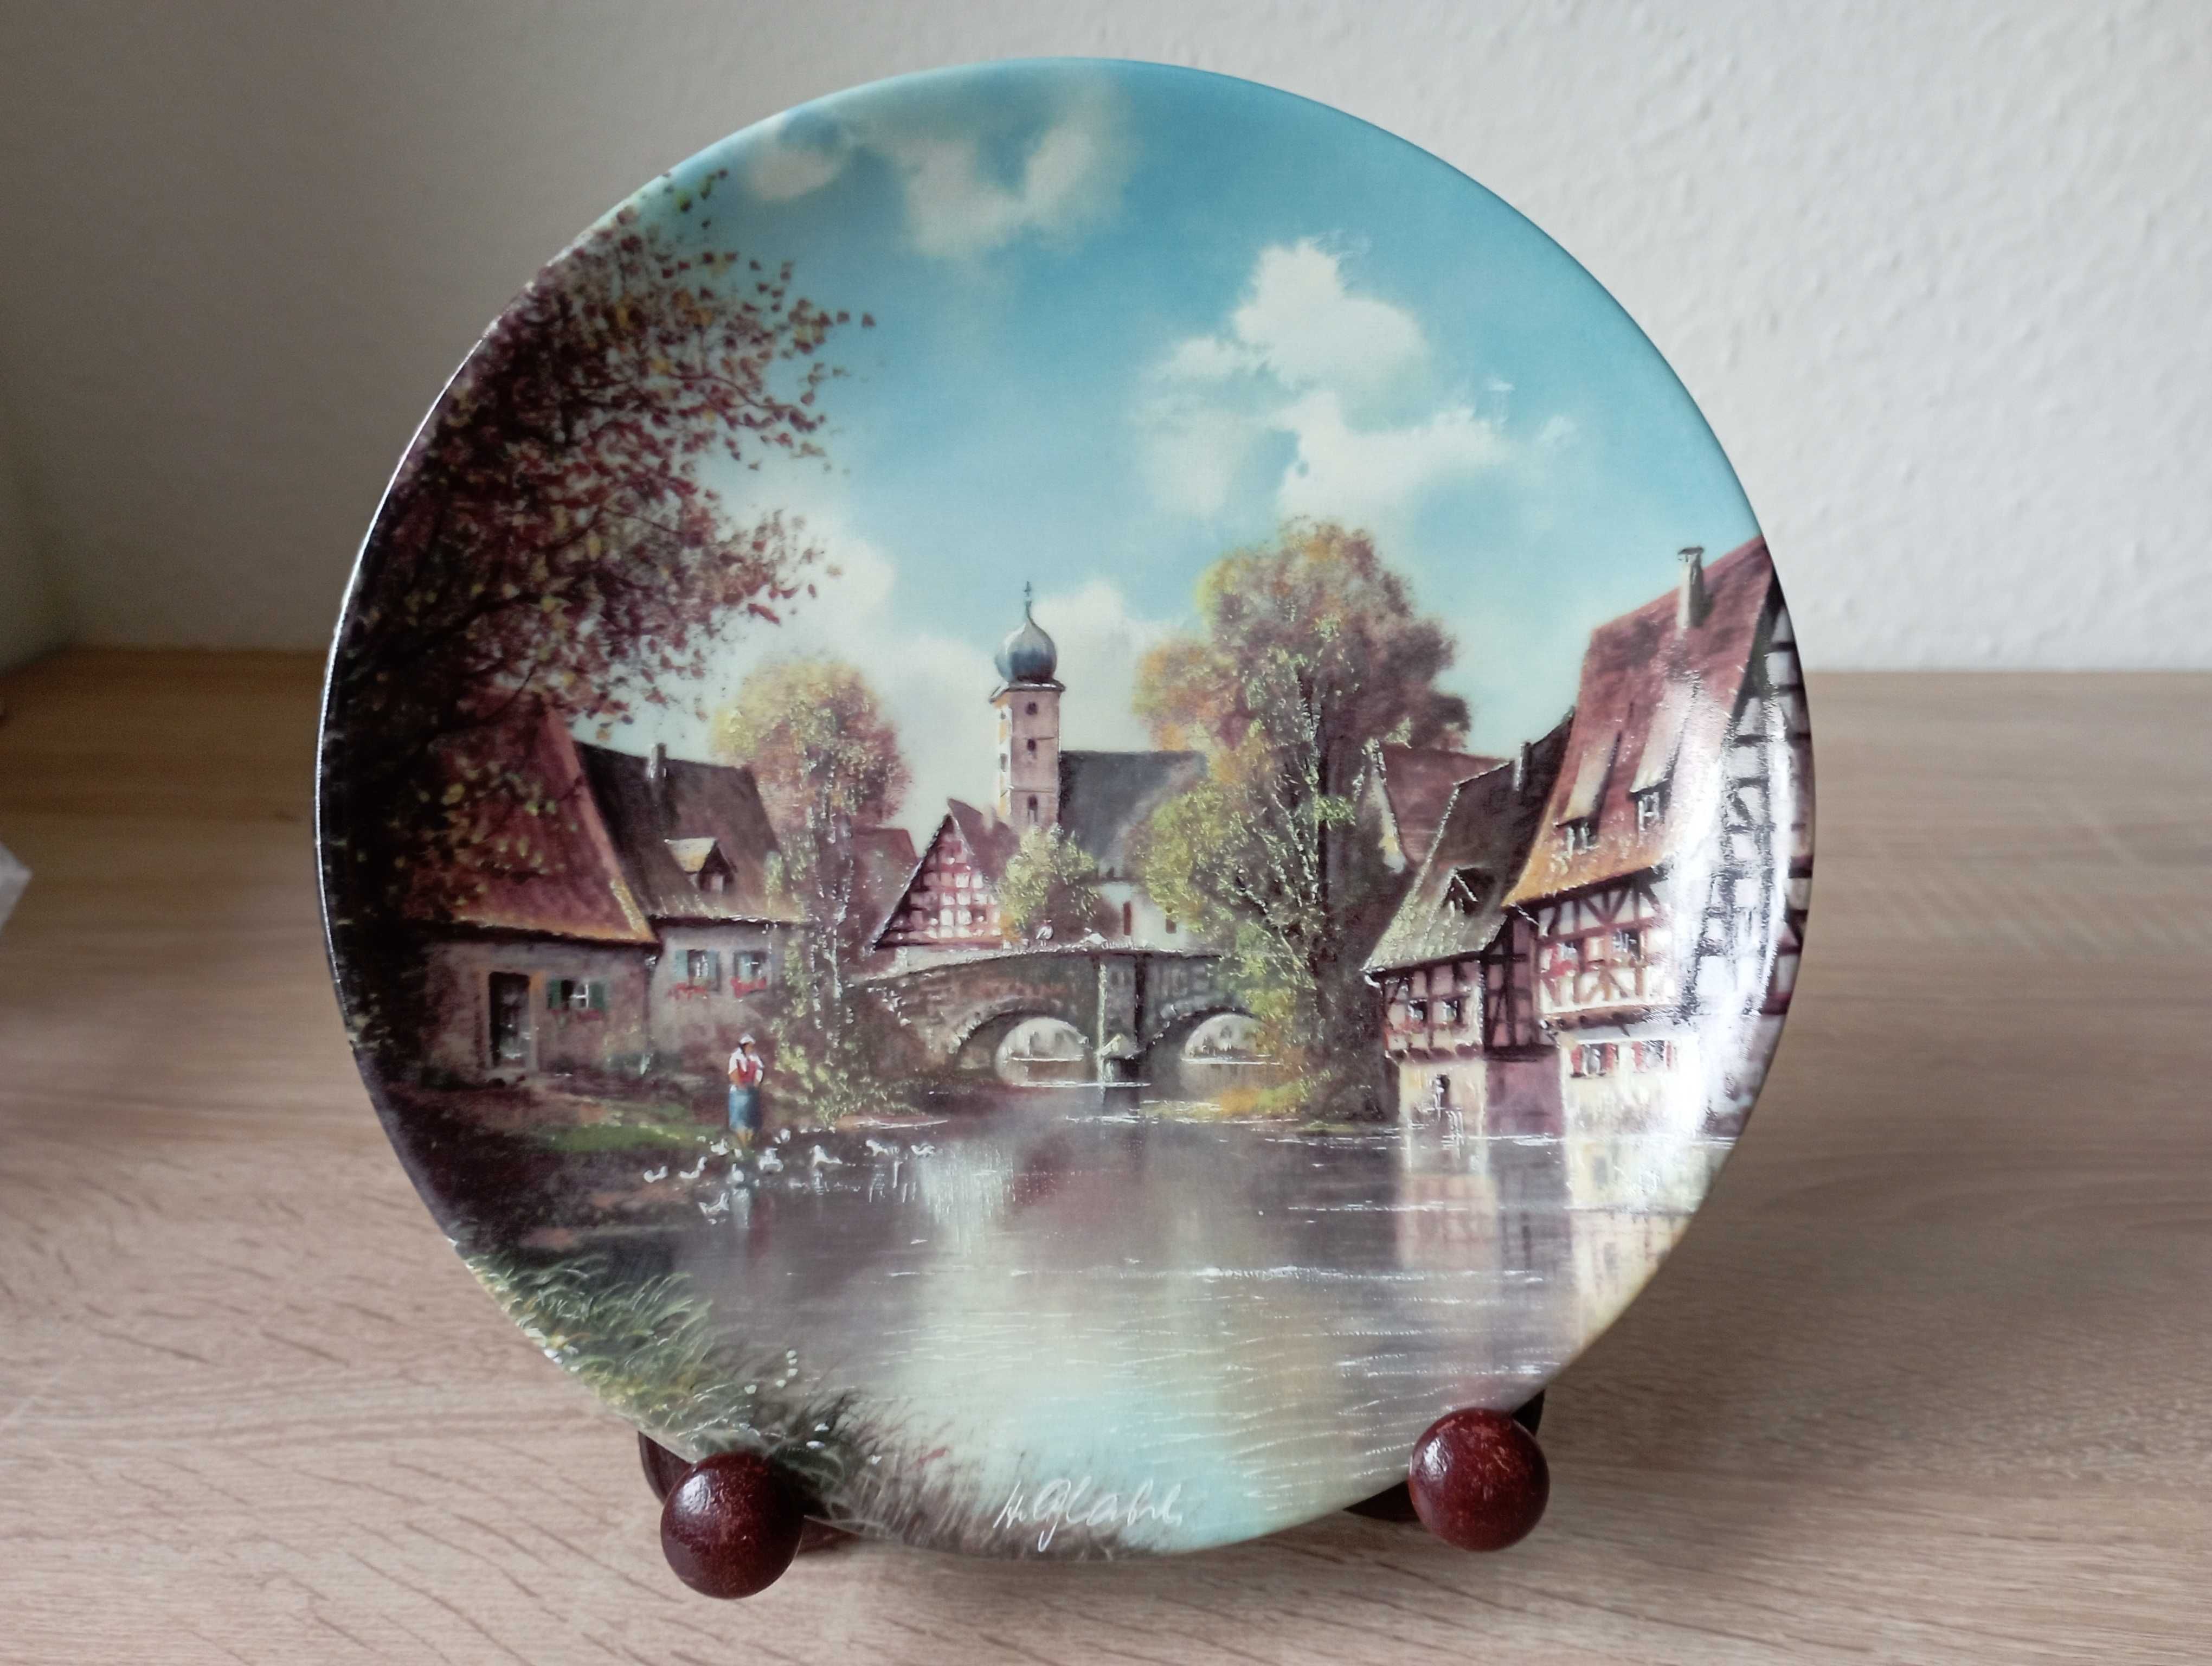 Porcelana Vohenstrauss "An der alten Brücke" - "Na starym moście"